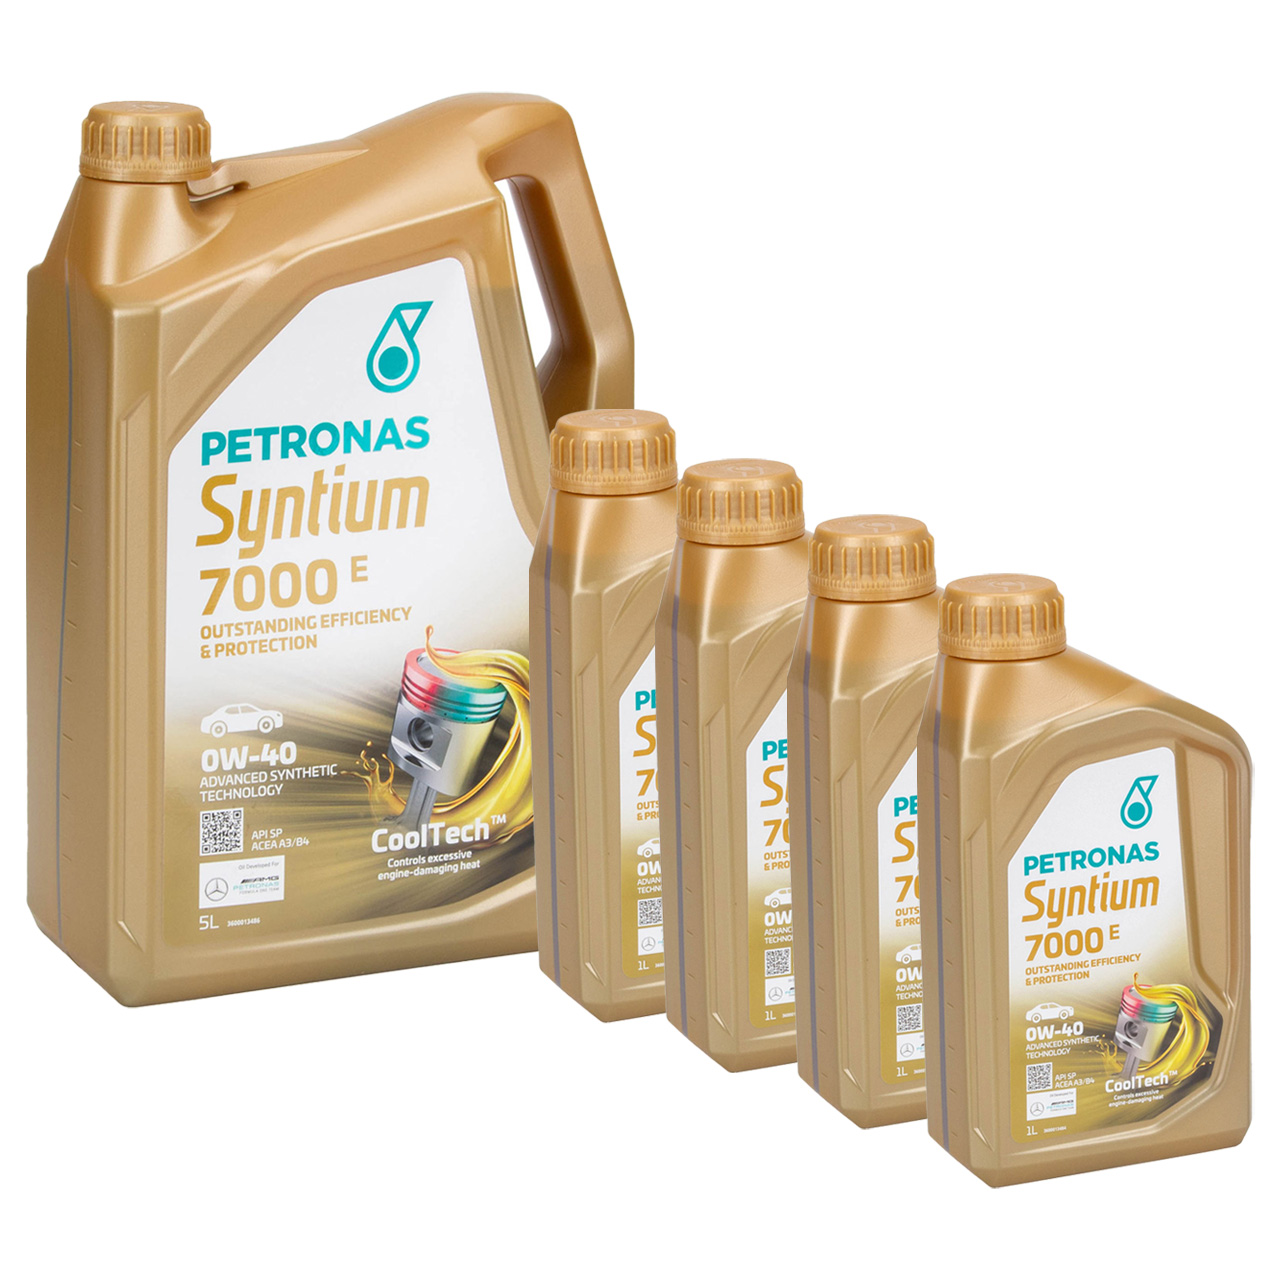 9L 9 Liter PETRONAS Syntium 7000 E 0W-40 Motoröl Öl BMW LL-01 MB 229.5 VW 502/505.00